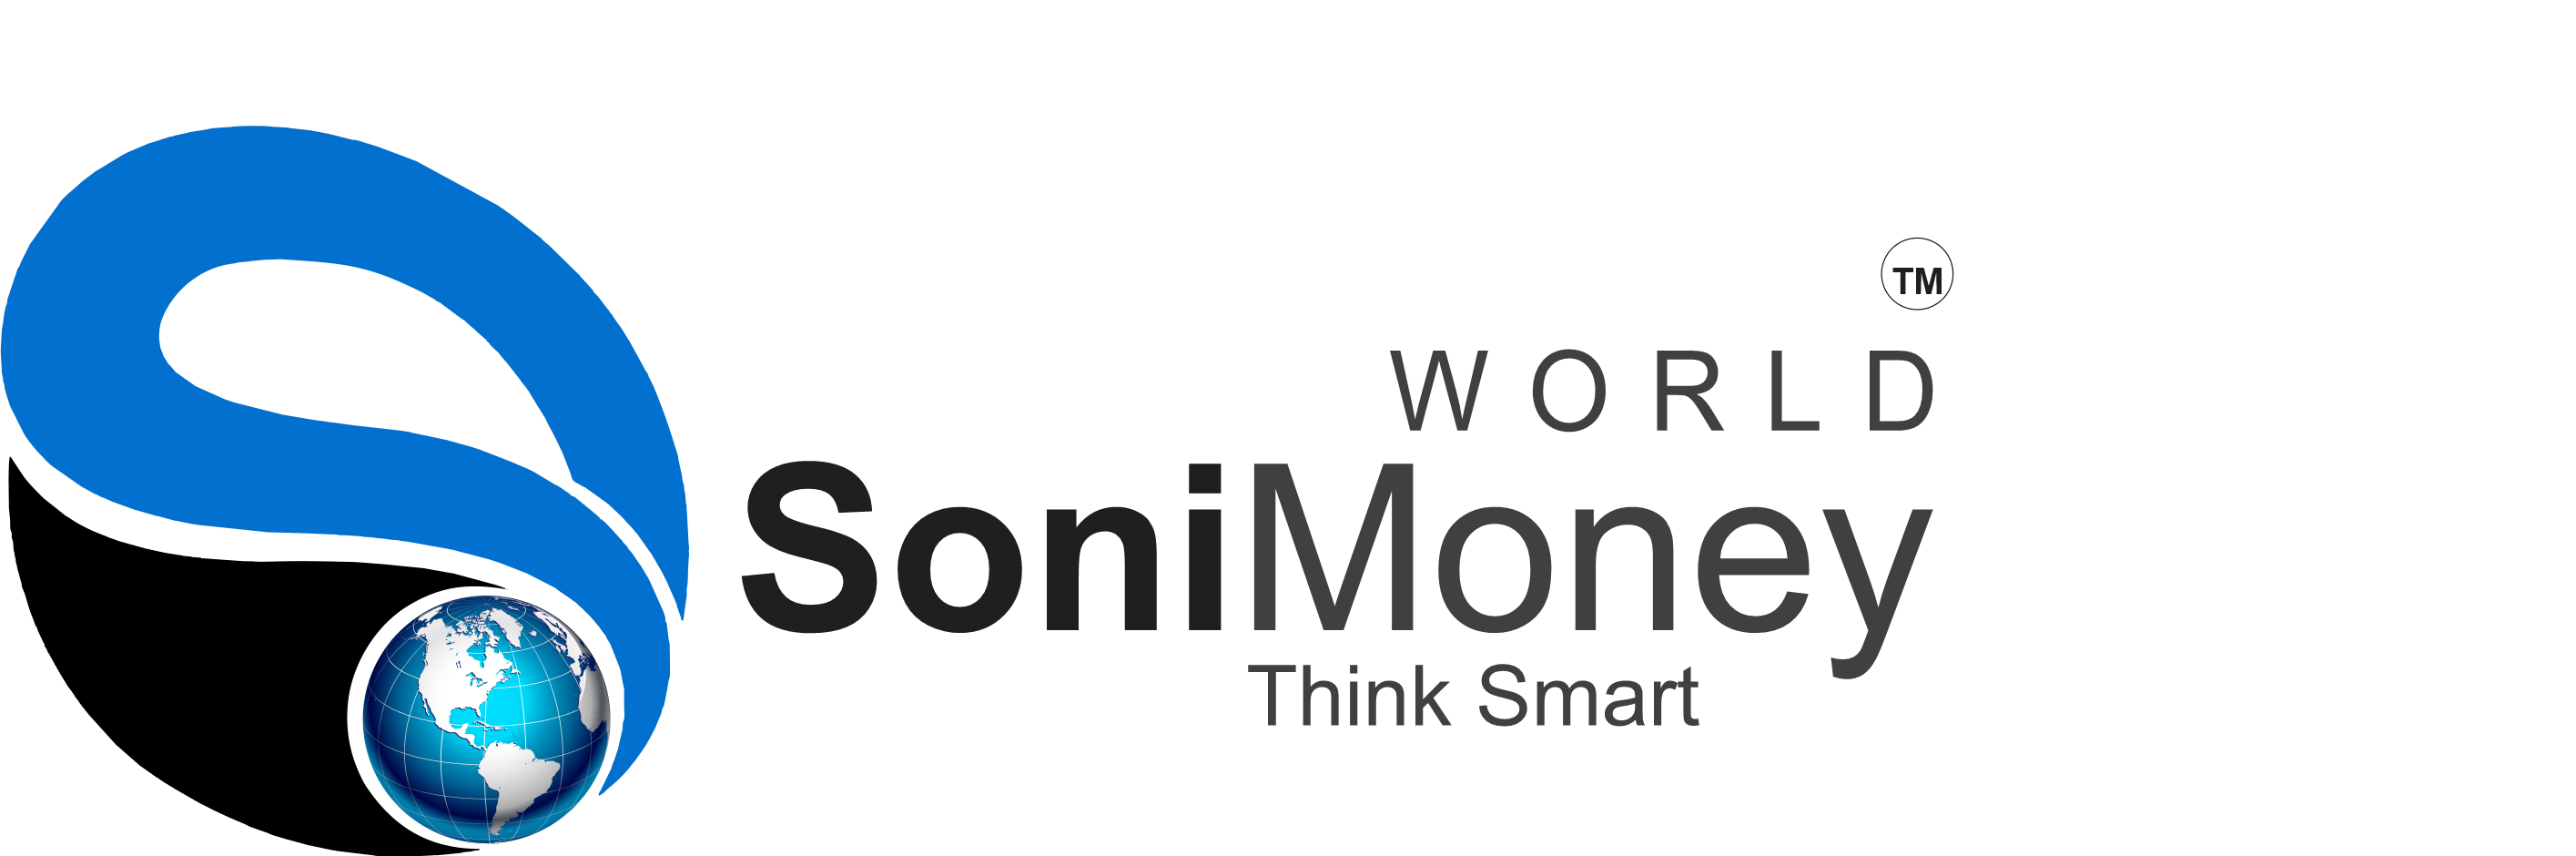 SoniMoney World